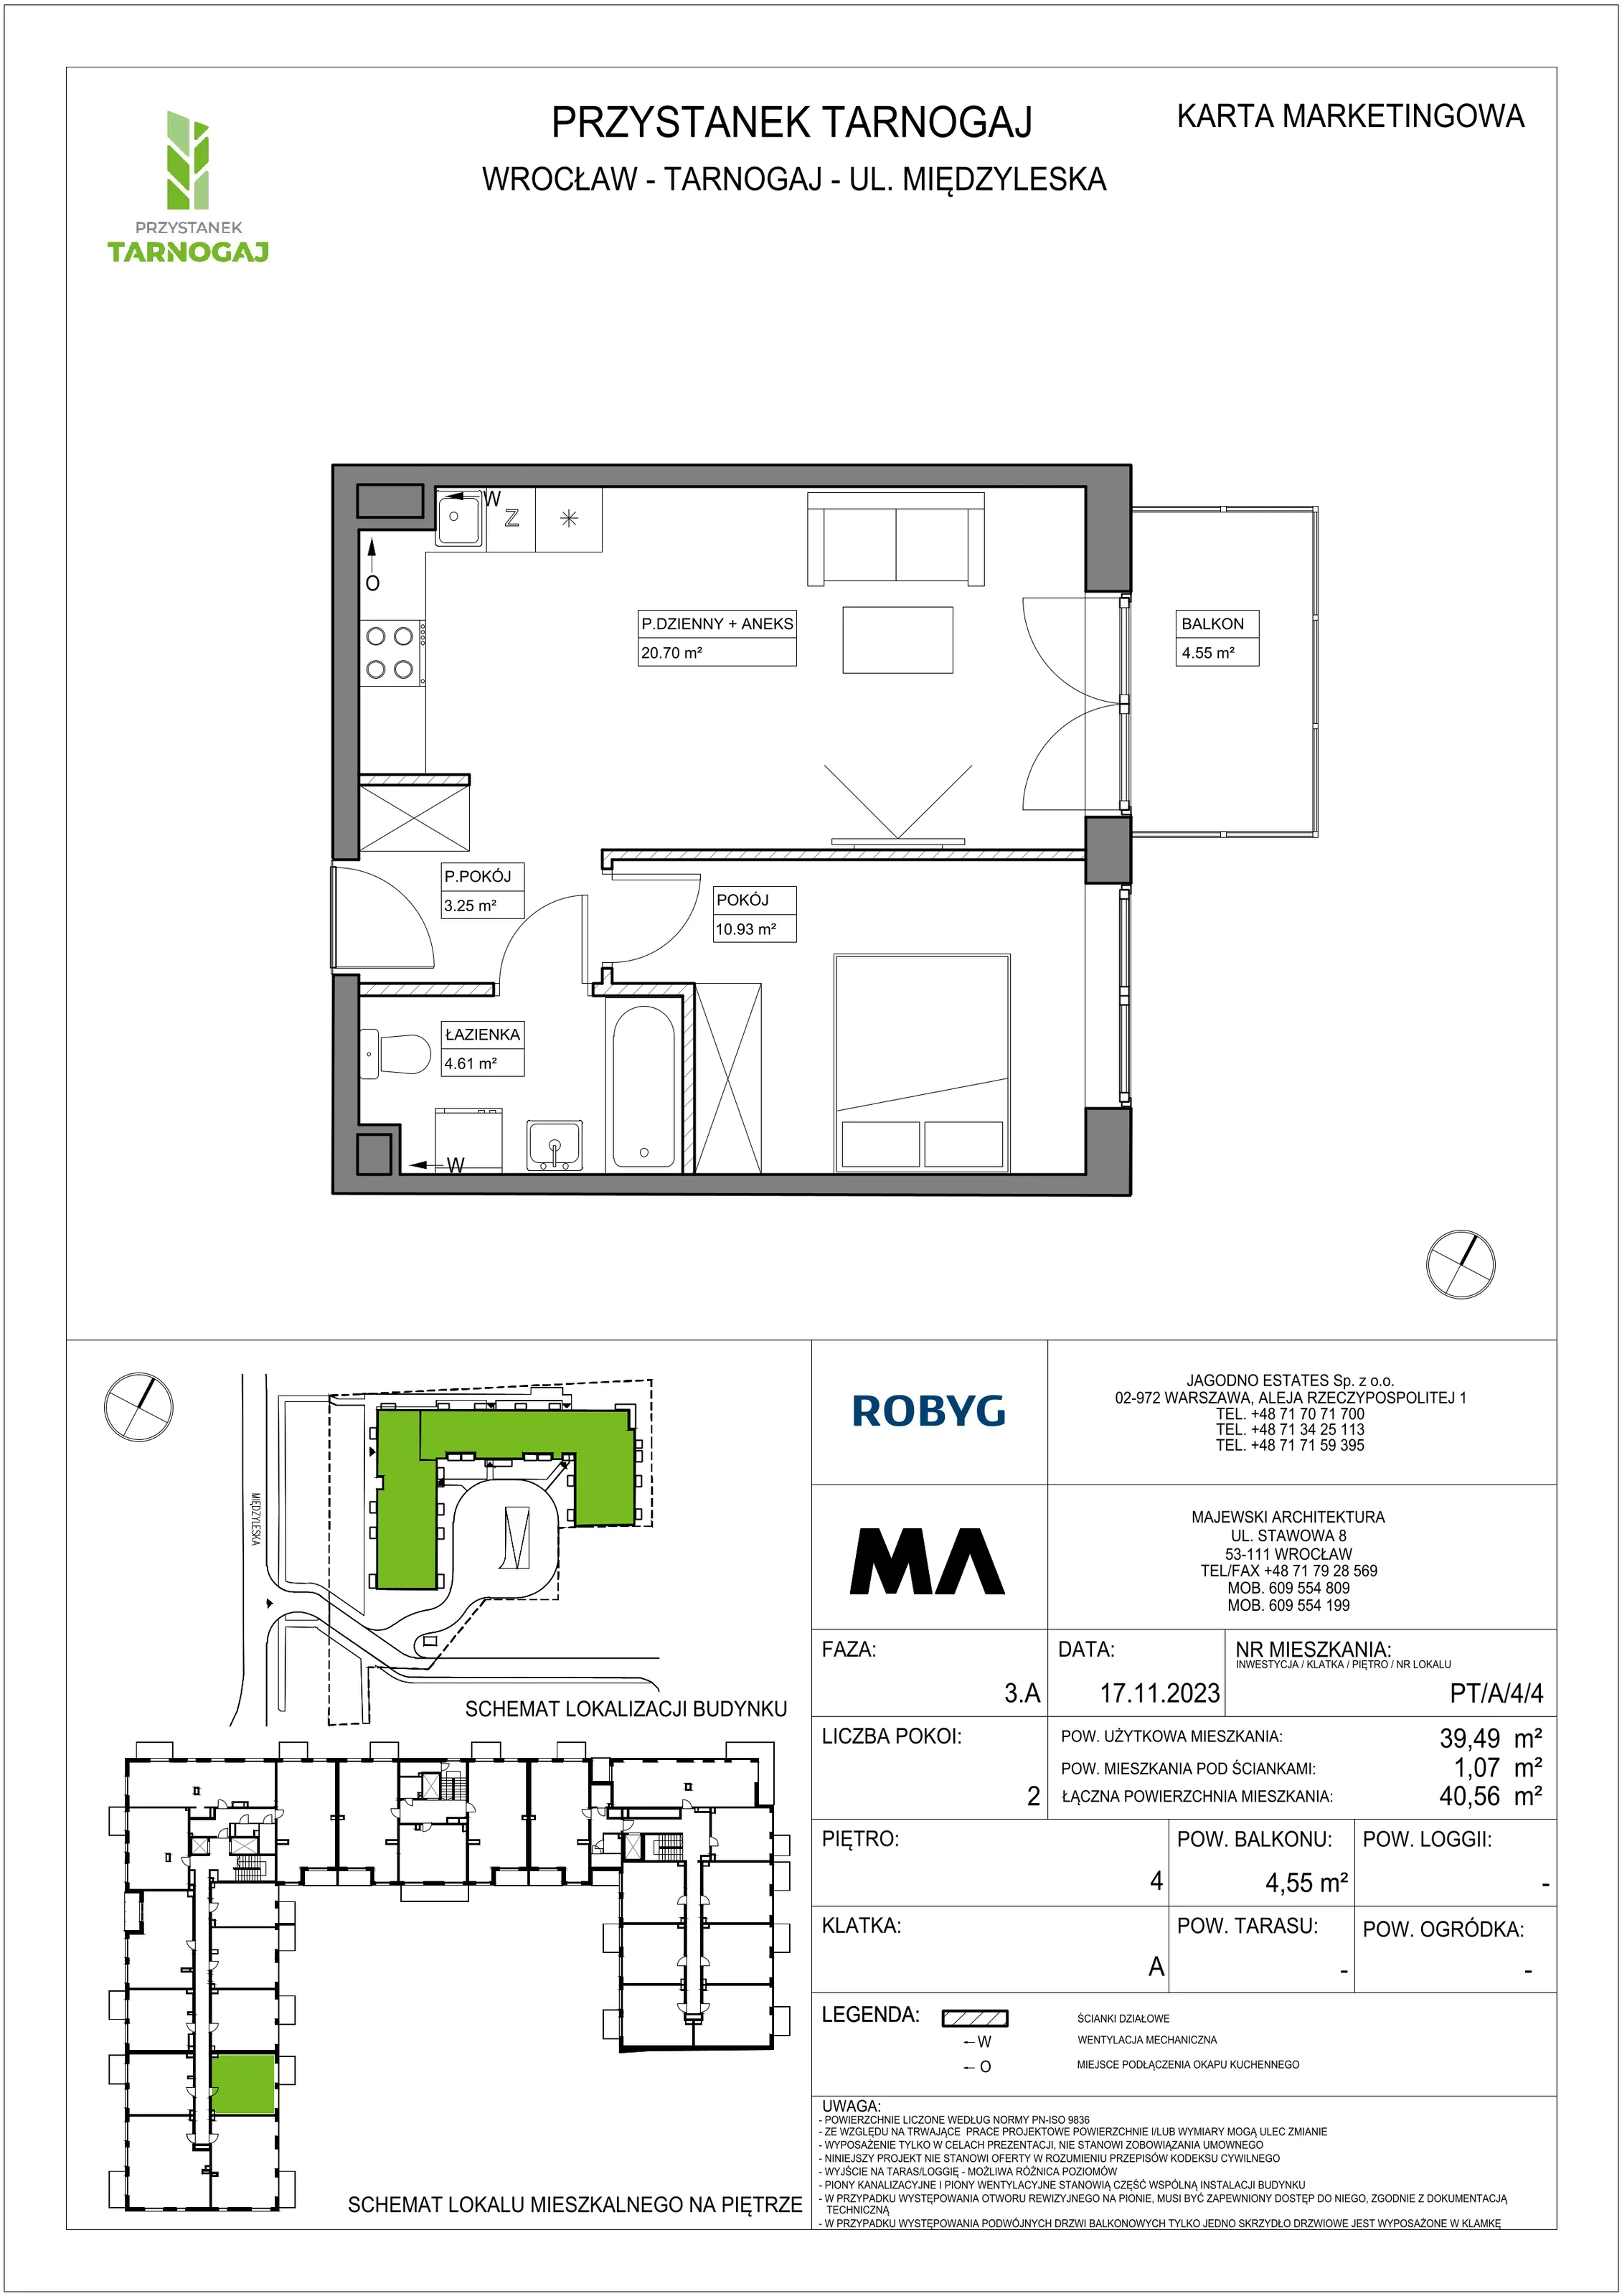 Mieszkanie 39,49 m², piętro 4, oferta nr PT/A/4/4, Przystanek Tarnogaj, Wrocław, Tarnogaj, Krzyki, ul. Międzyleska / Gazowa